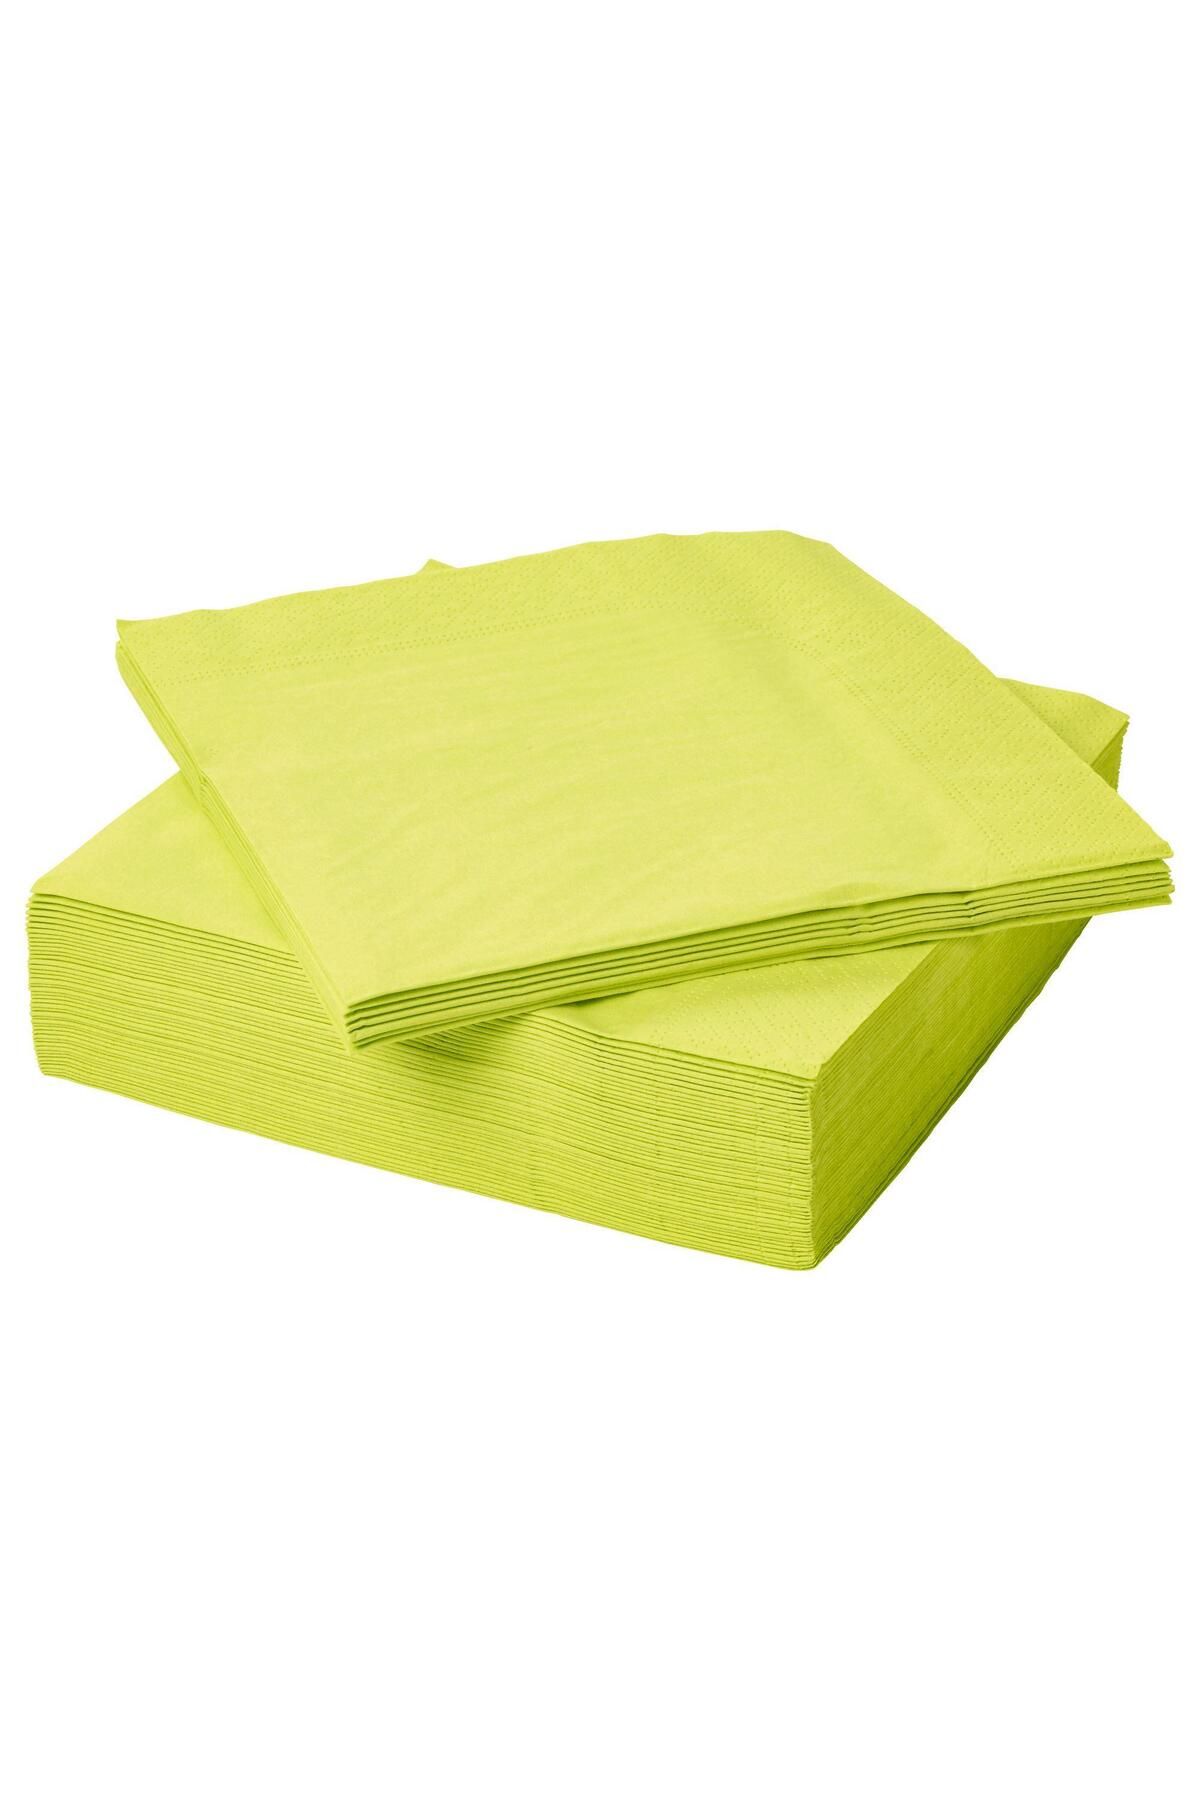 IKEA Kare Servis Peçete 40x40 Meridyendukkan 50 Adet Açık Yeşil-neon Renk Sunum Kağıt Peçete